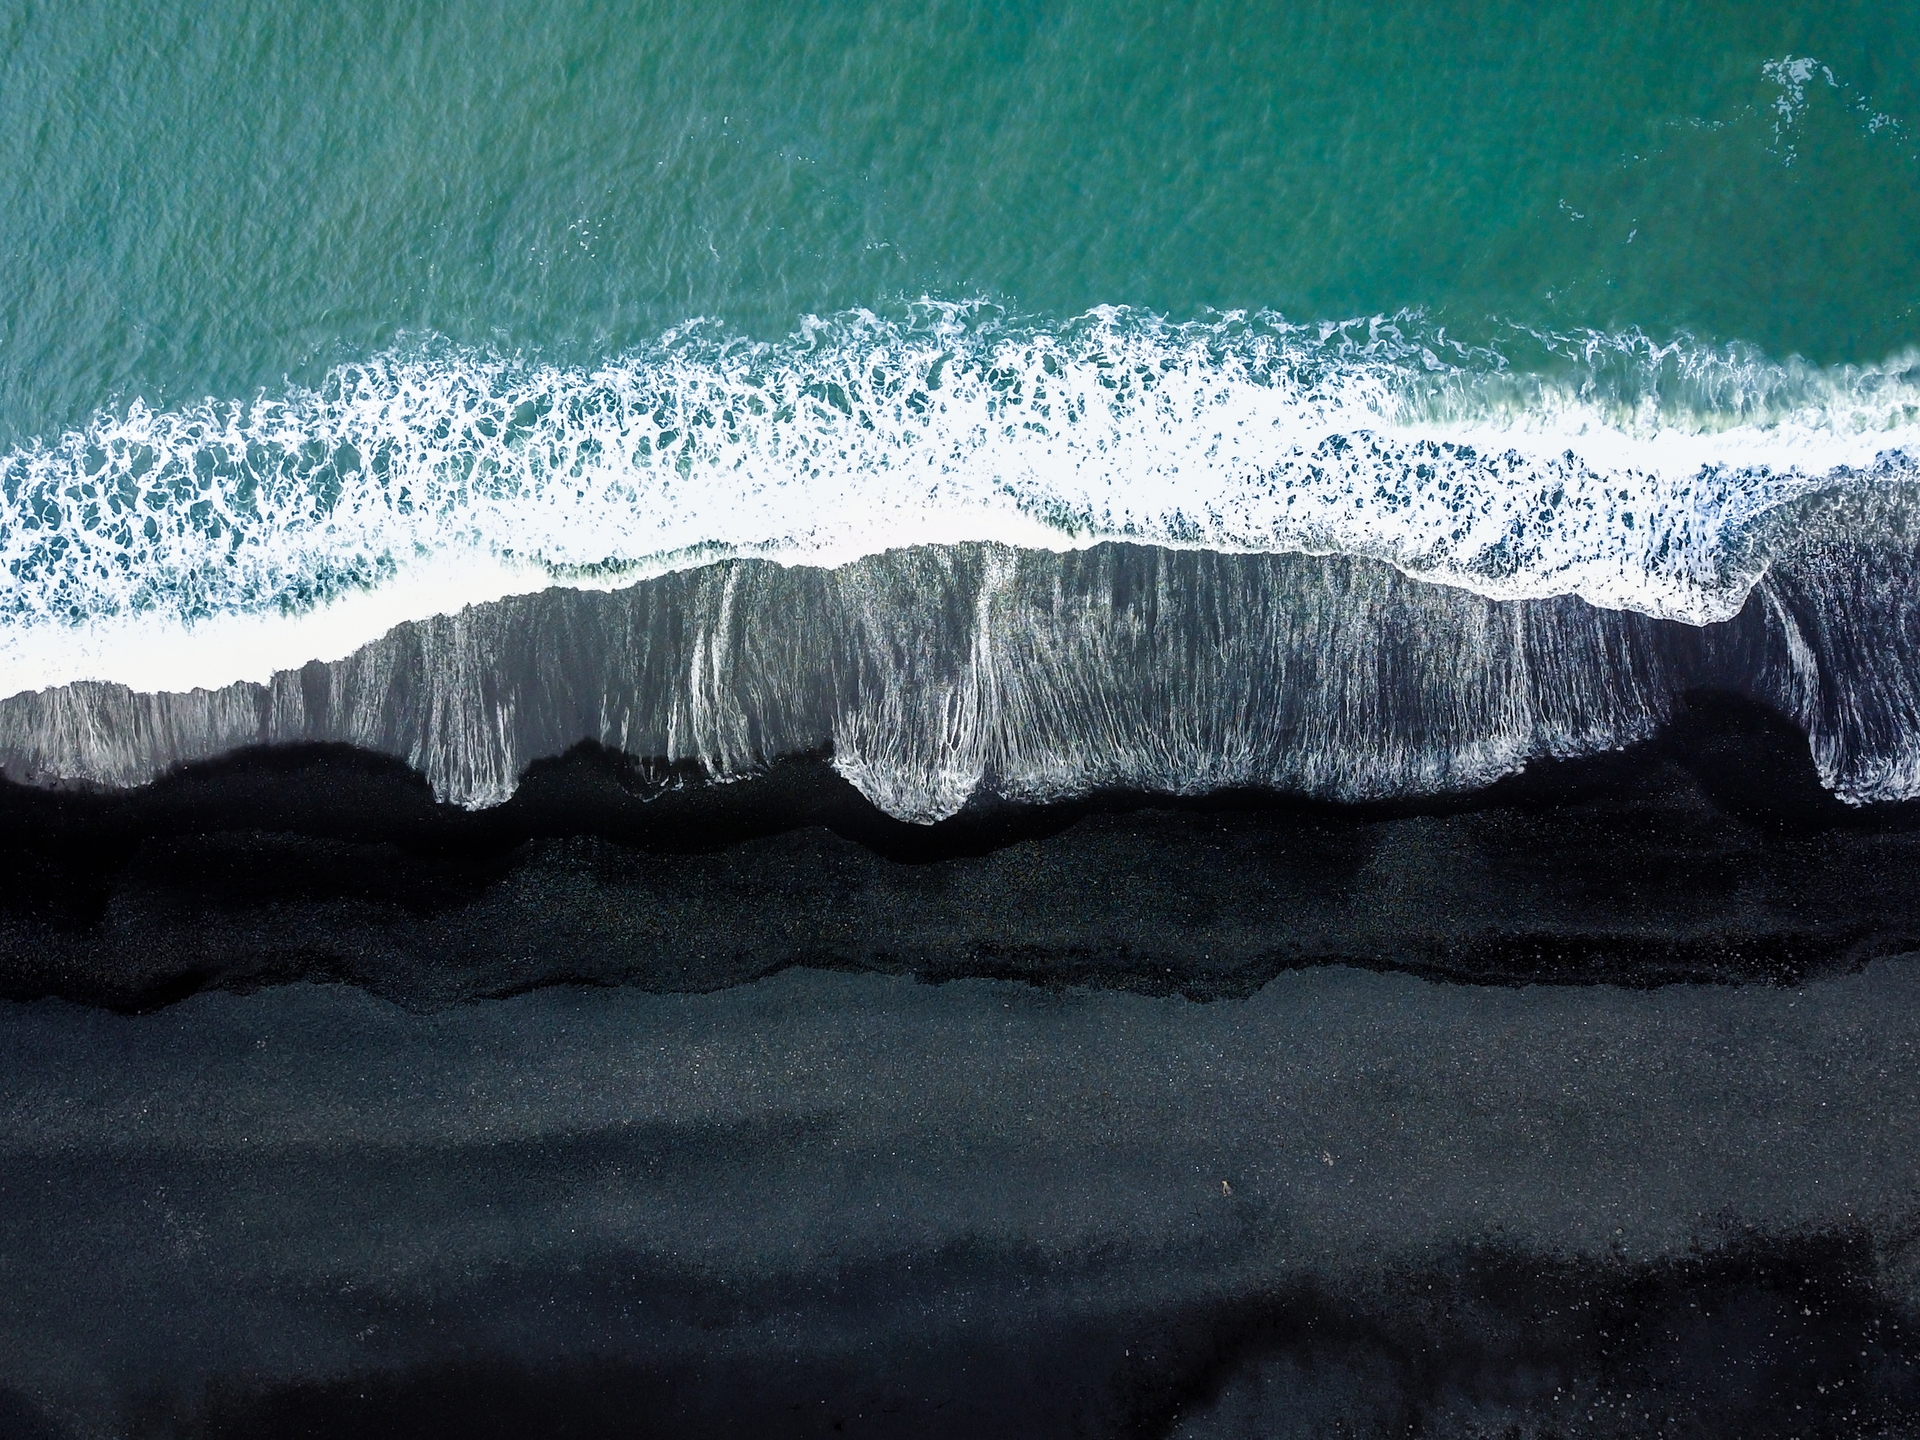 IJsland lavastrand door Door Nathan Mortimer